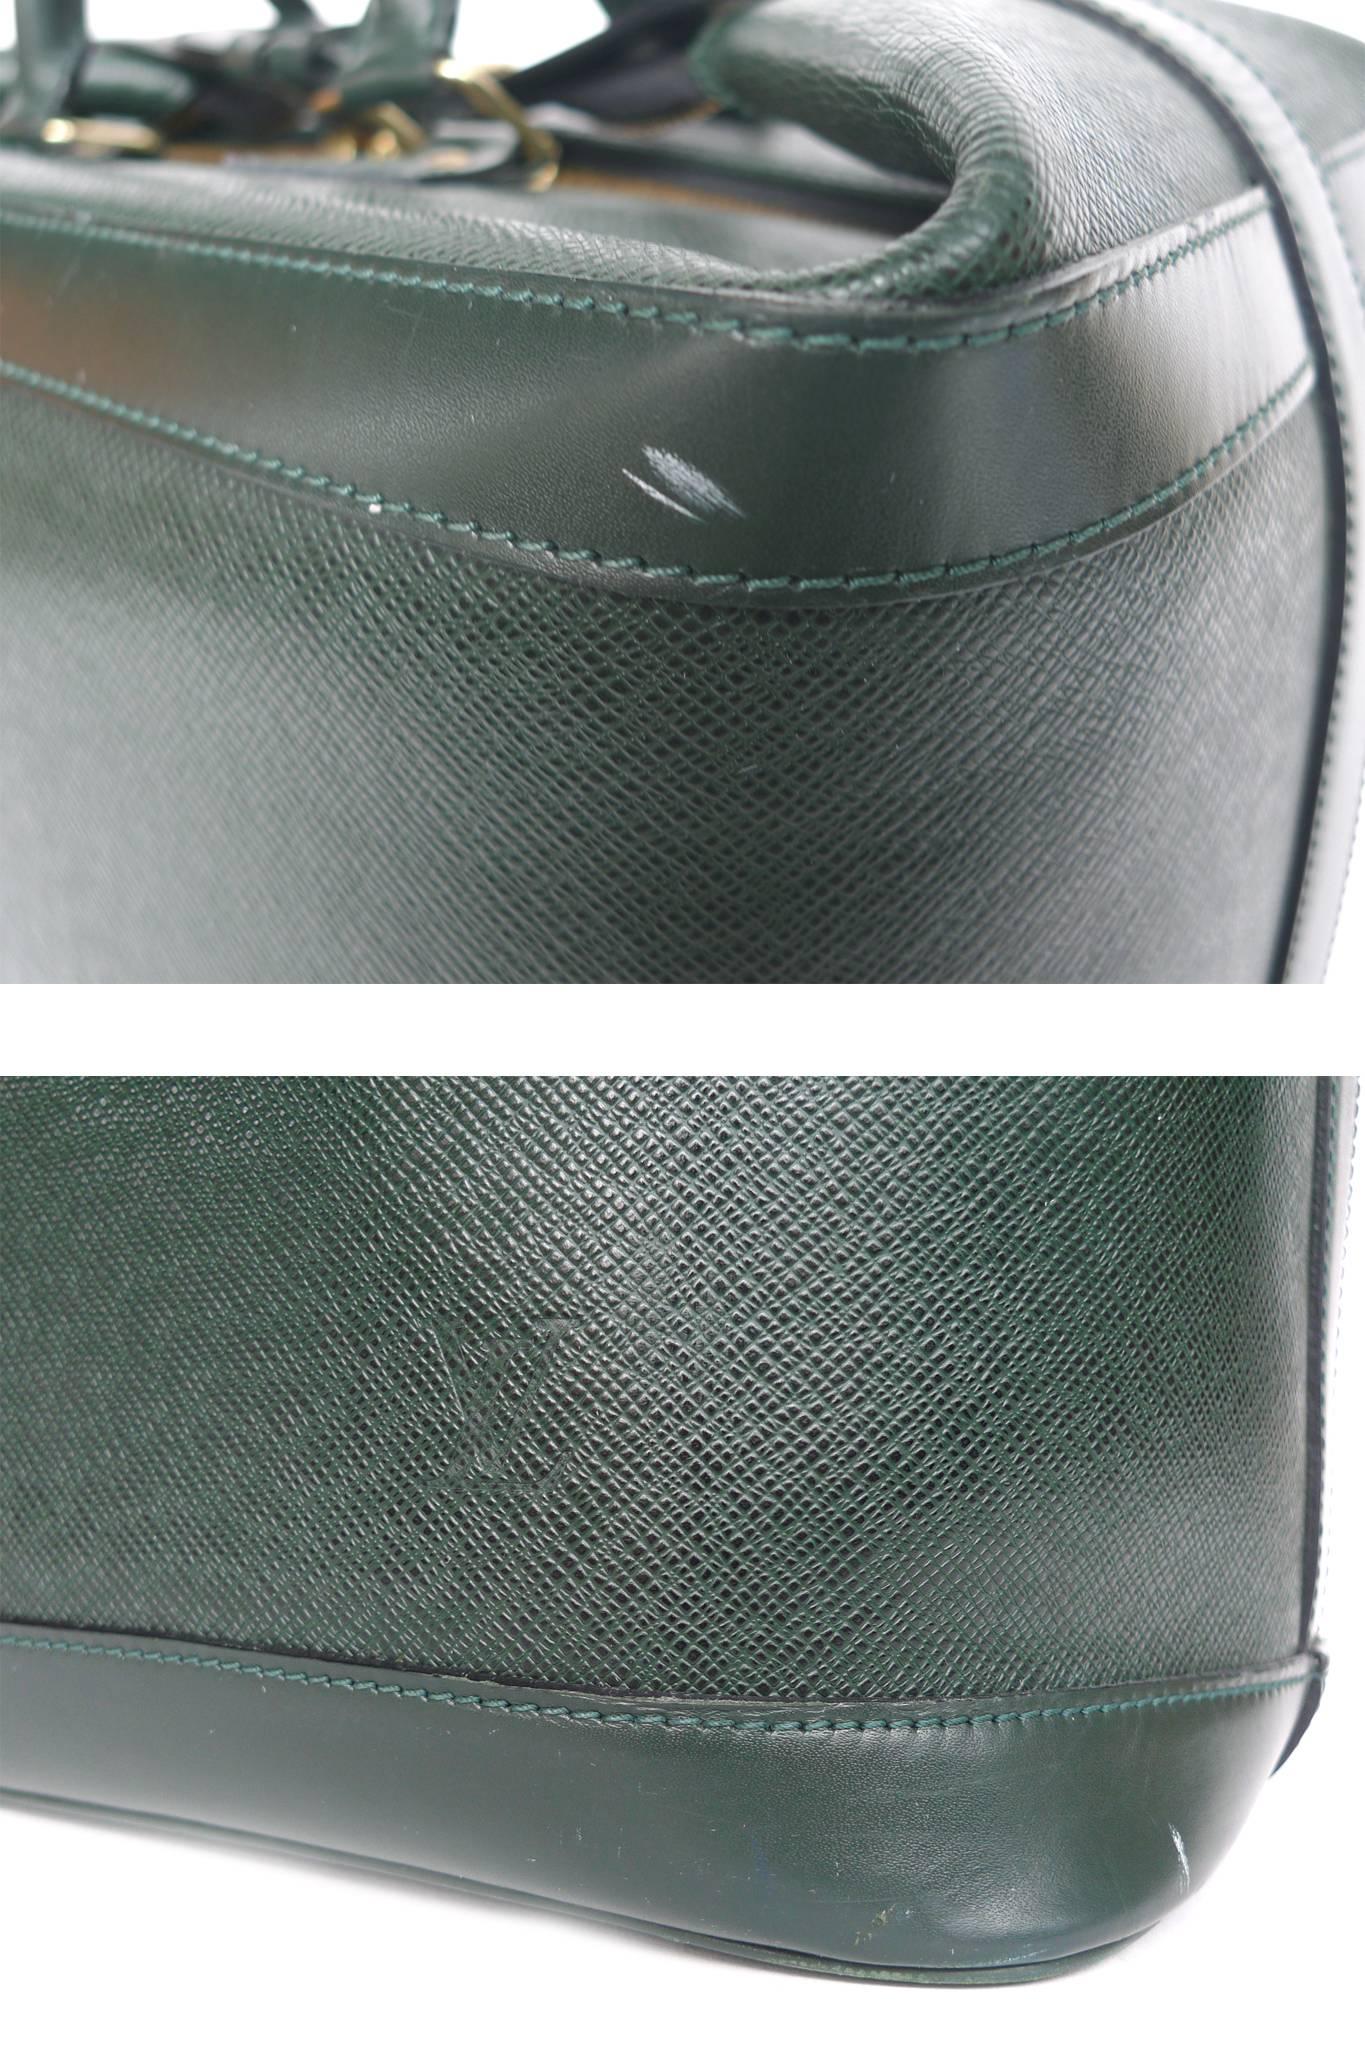 Contemporary Louis Vuitton Taiga Leather Cruiser 40 Travel Bag